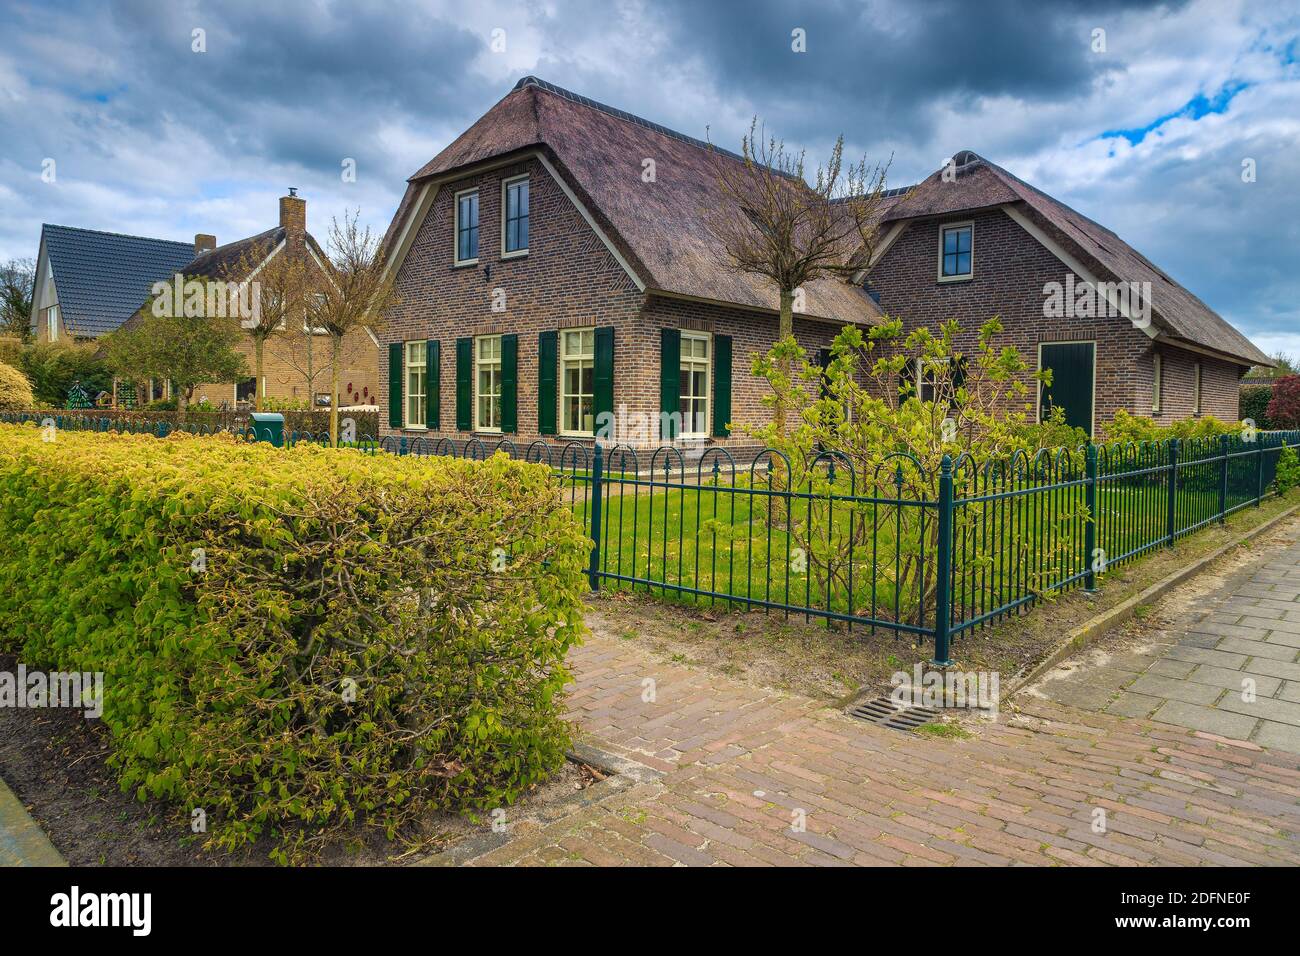 Magnifique maison hollandaise de luxe avec toit de chaume et cour avant ordonnée. Jardin spectaculaire avec herbe verte et plantes. Façade avec jardin et vert b Banque D'Images